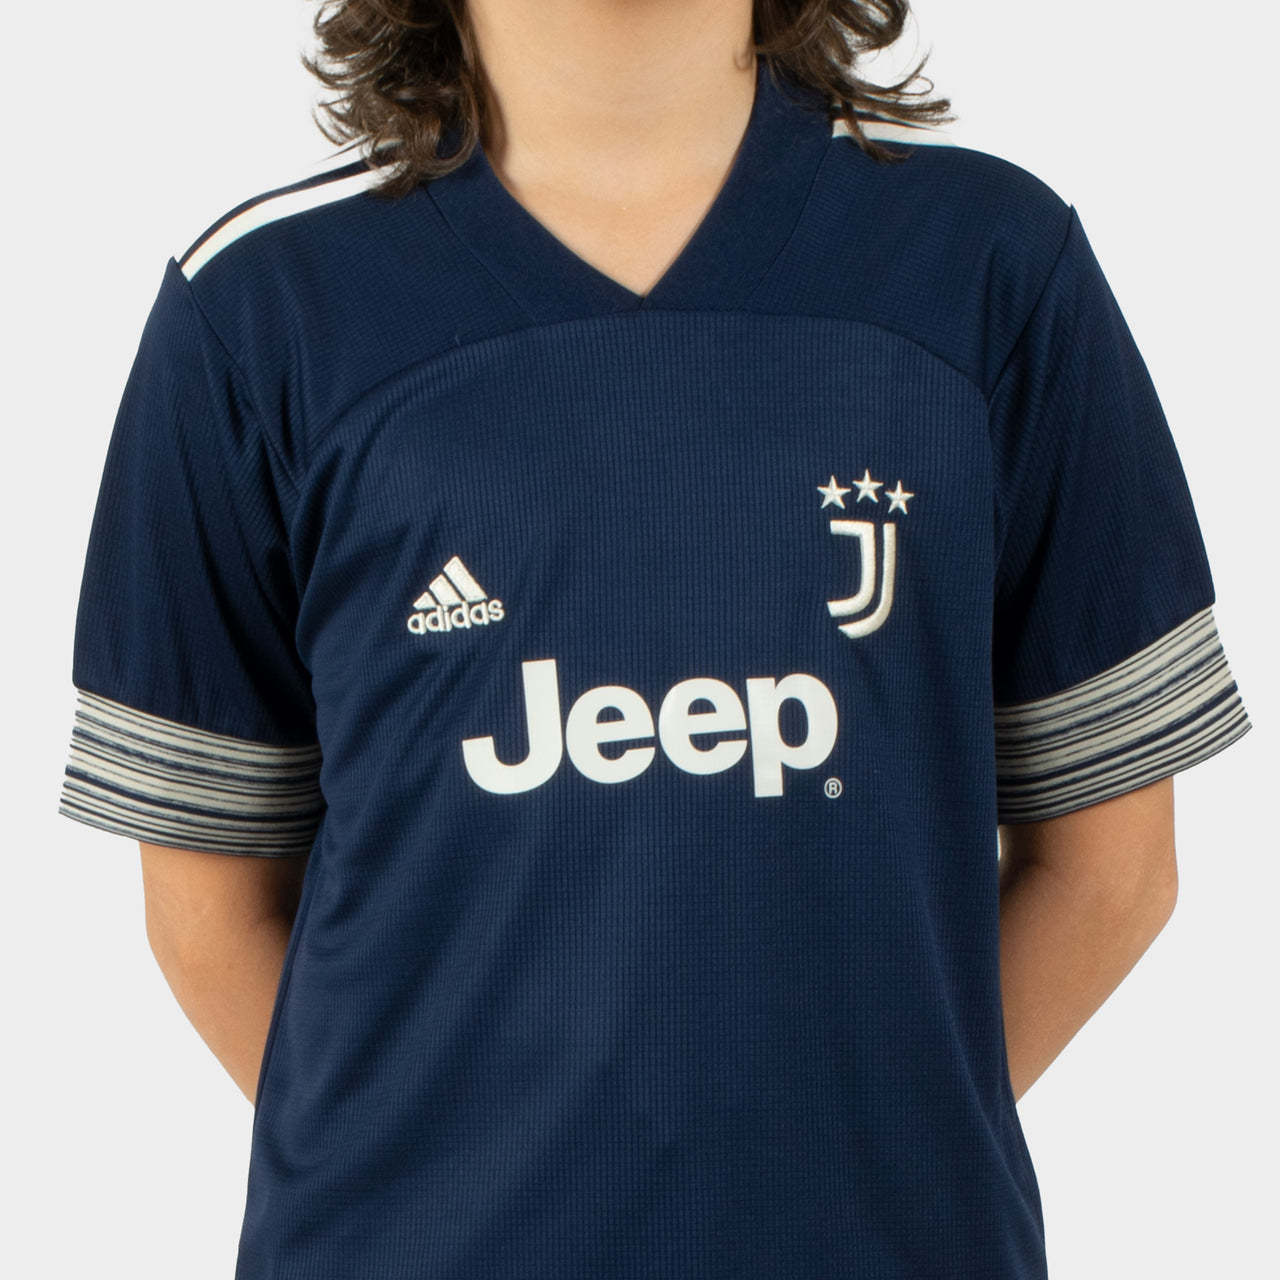 Juventus 20/21 Kids Away Kit